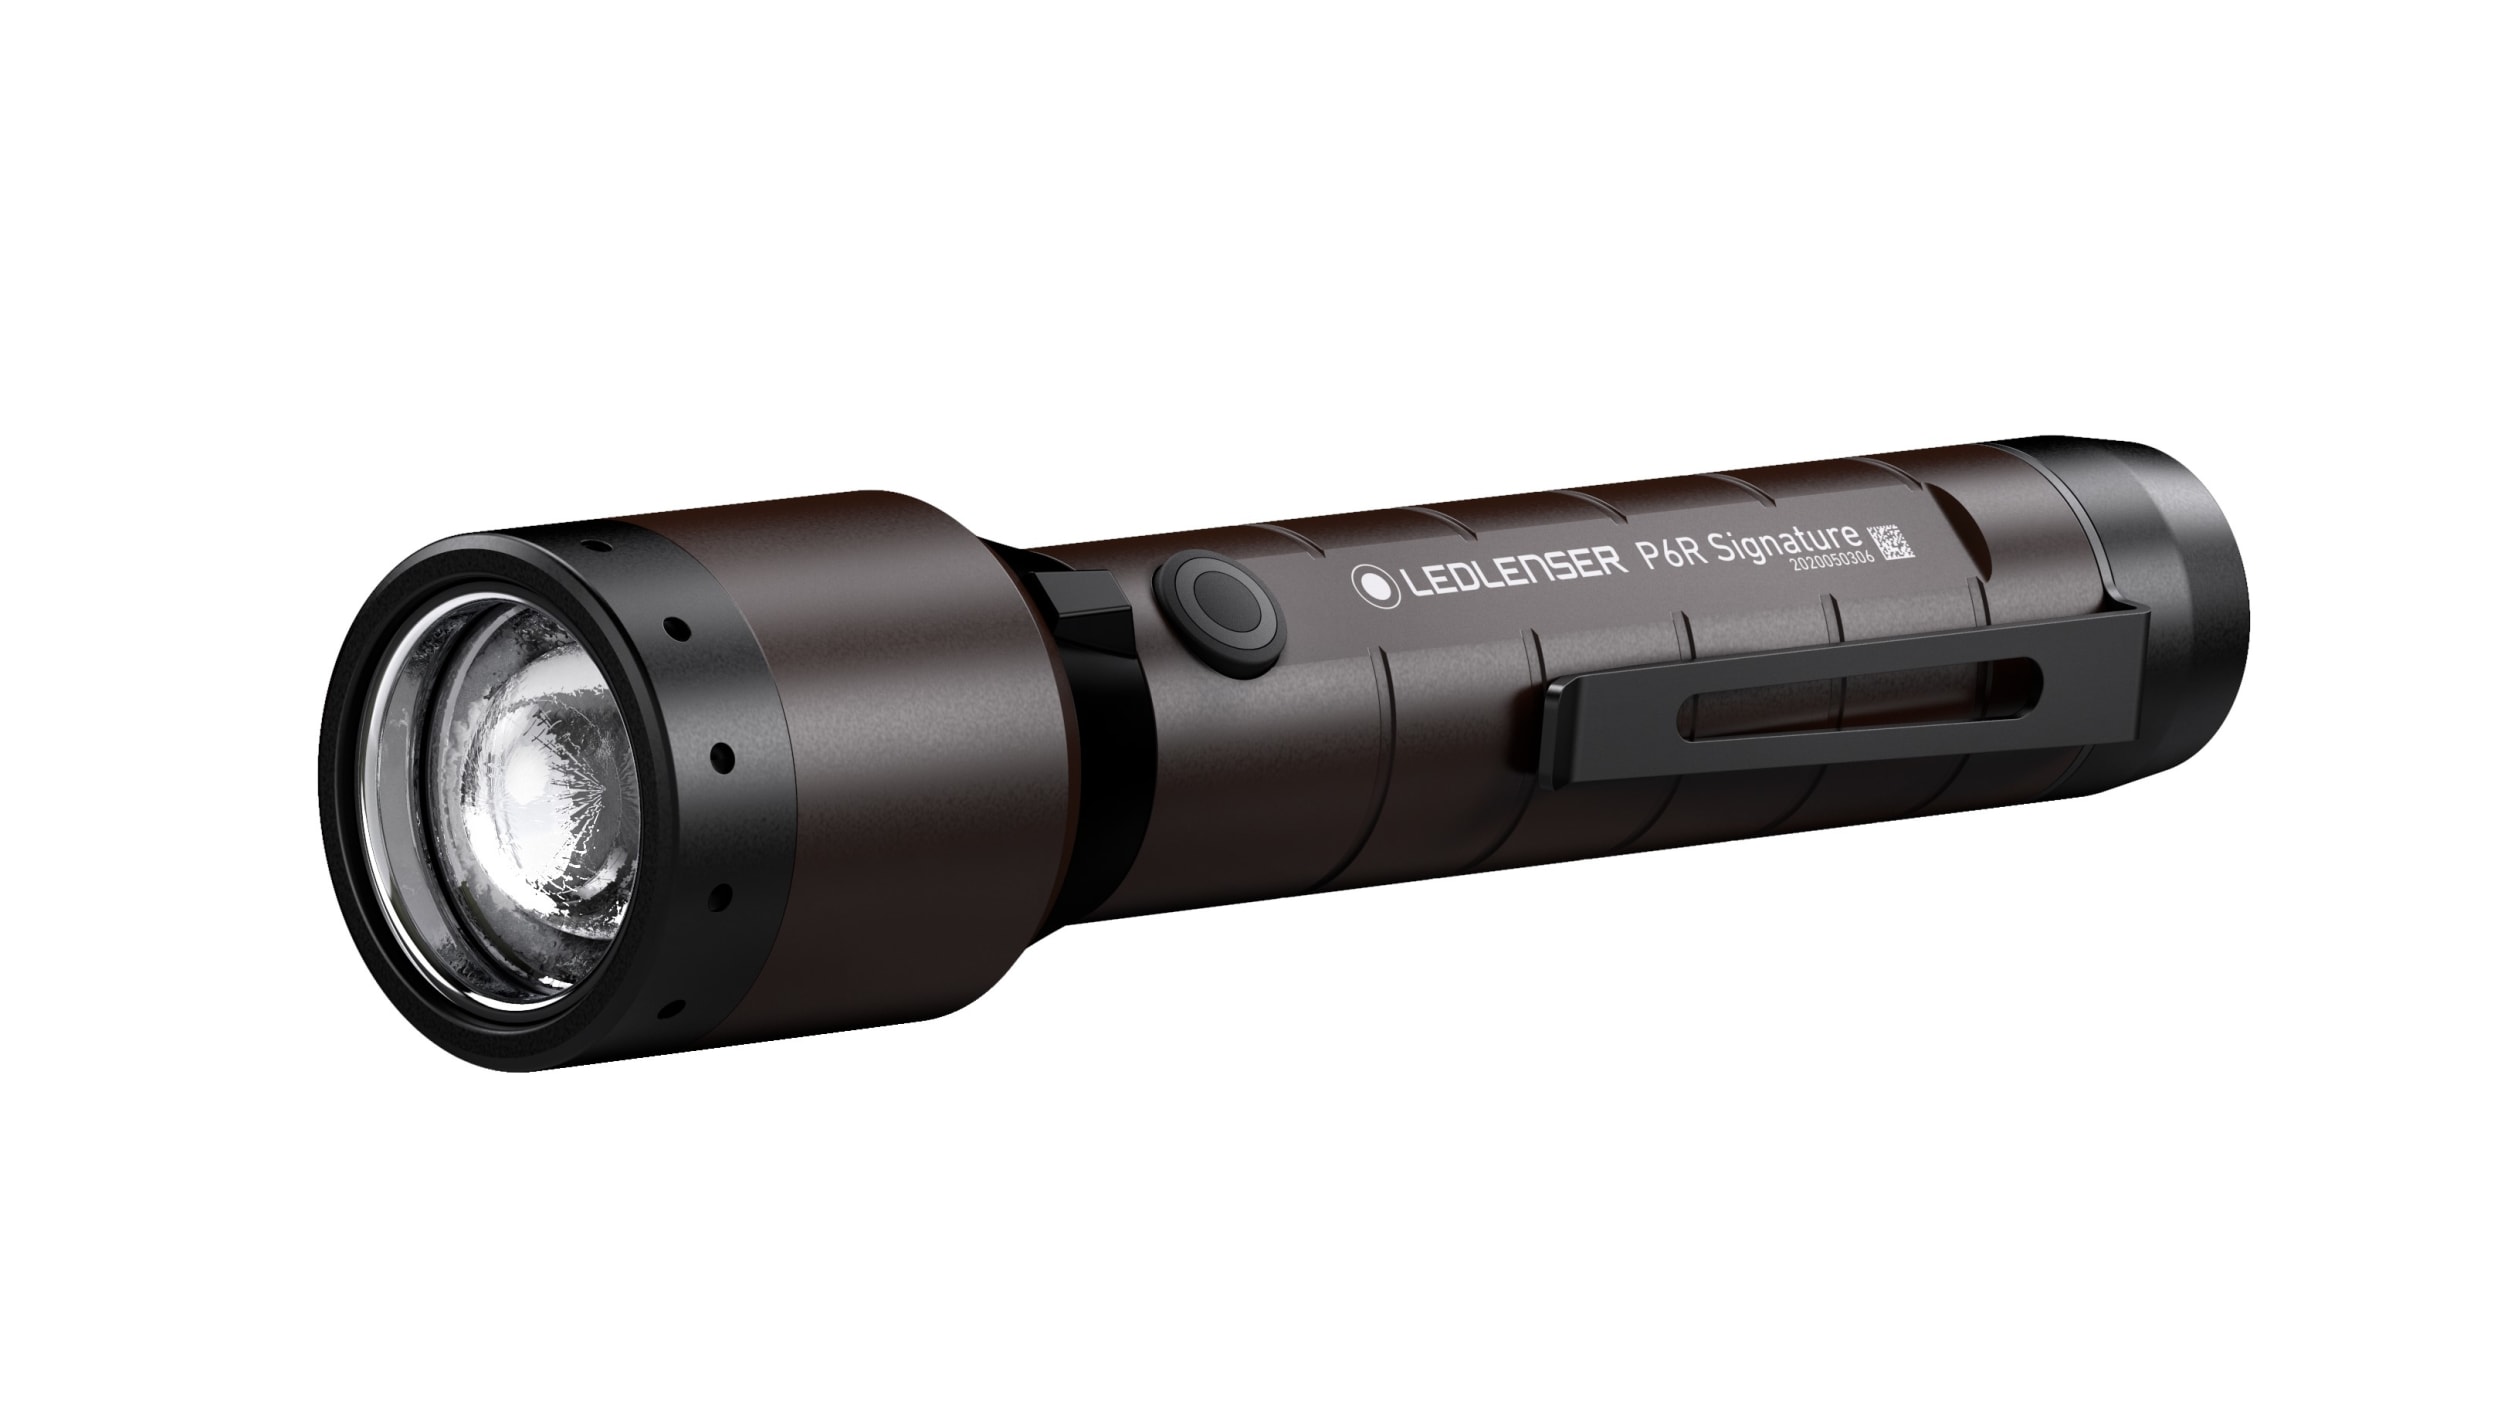 Lampe torche LED - LedLenser® P6R Core QC - 4 couleurs - Rechargeable